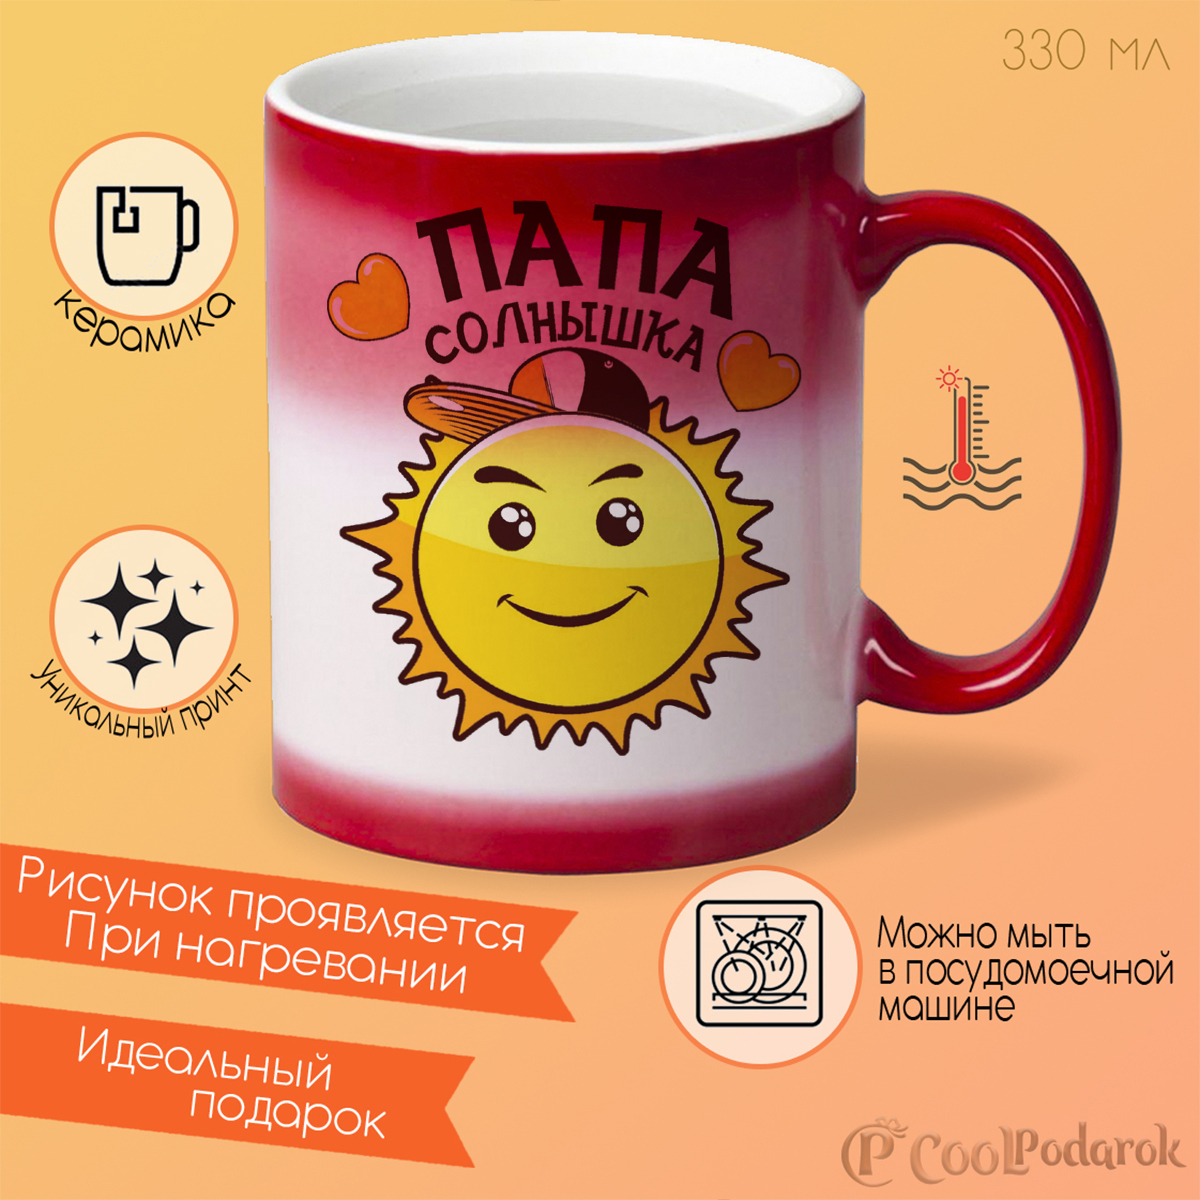 Солнце папины. Кружка солнышко. Чашка Кружка солнышко. Дизайн чашки с солнышком. Кружка солнце.